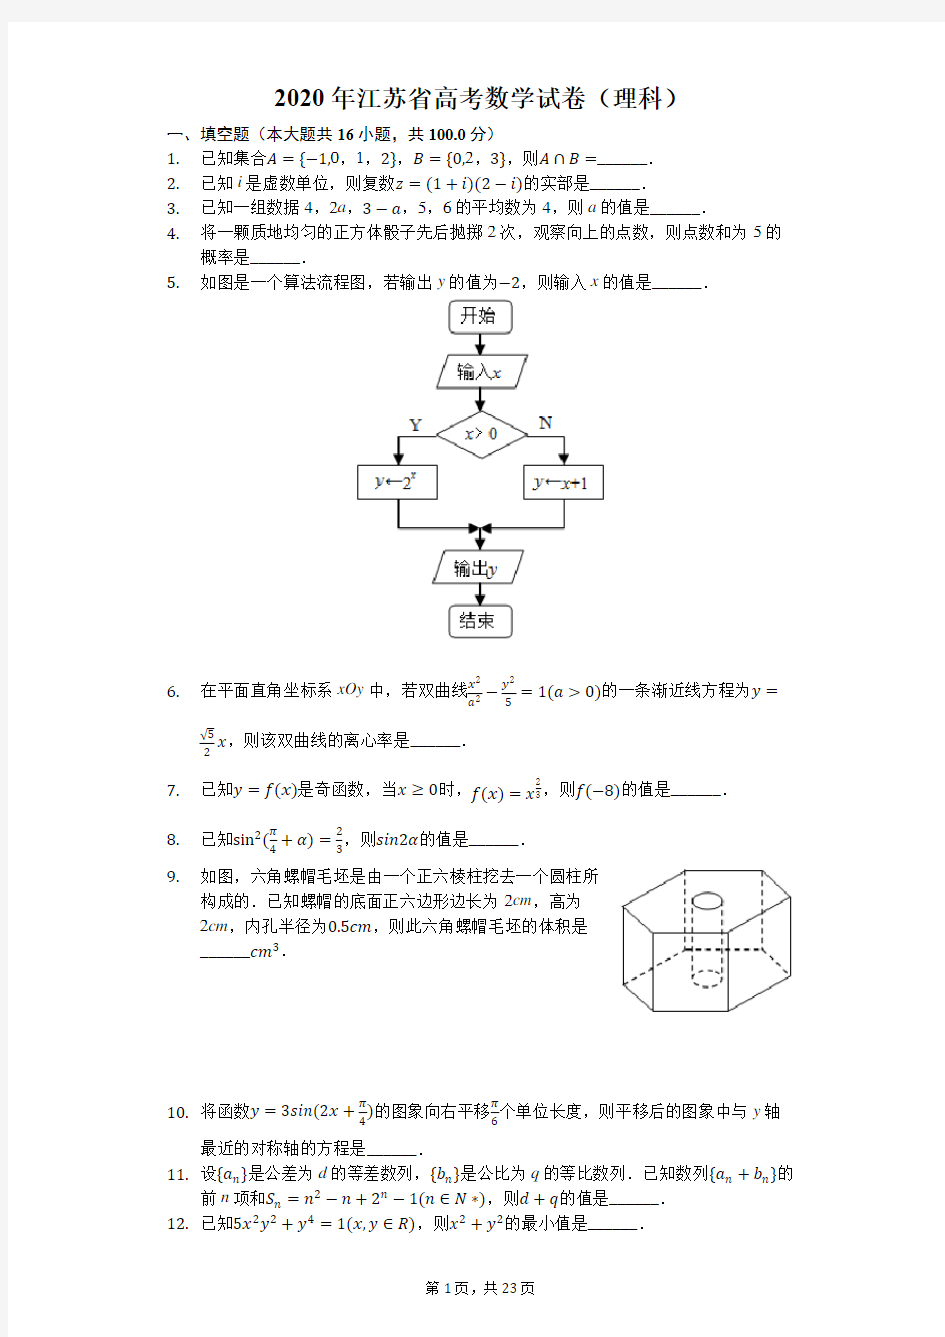 2020年江苏省高考数学试卷(包括附加题)【含详答】